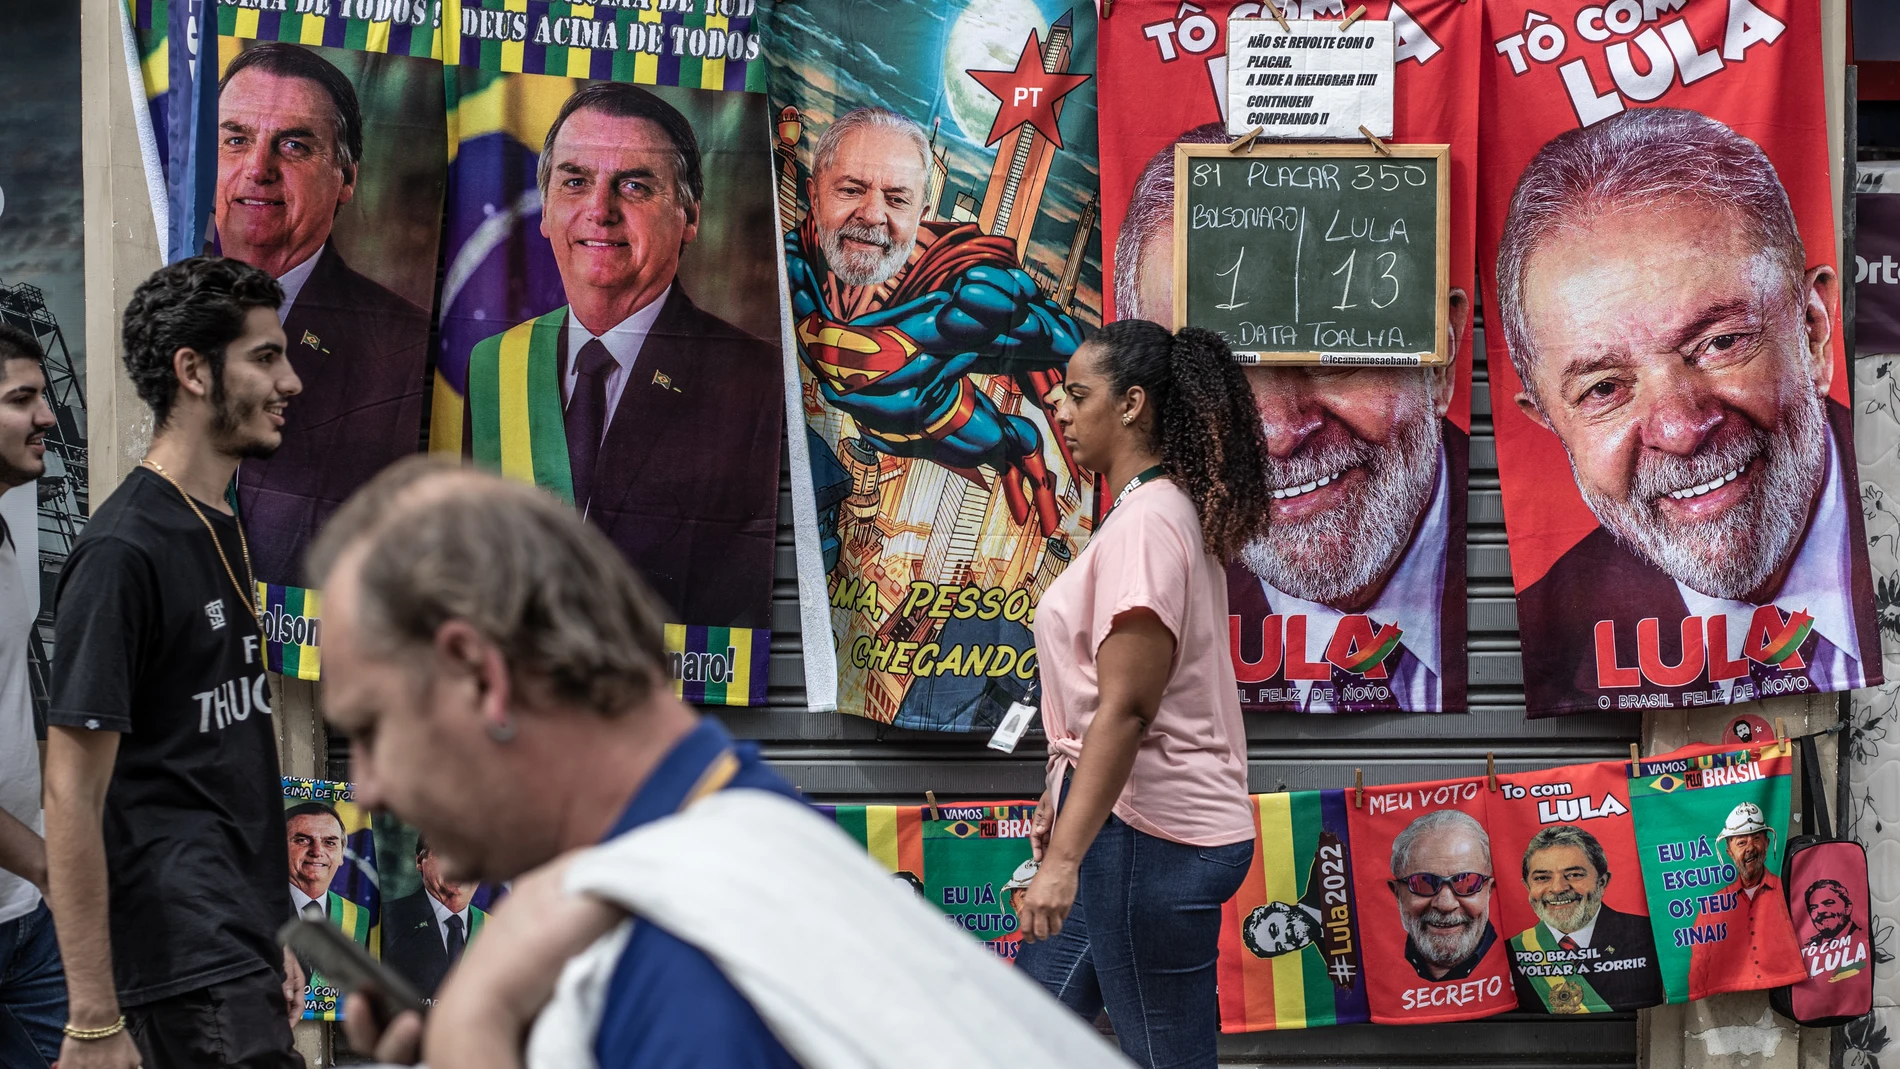 Varias personas caminan frente a un puesto callejero de toallas con imágenes del actual presidente de Brasil y candidato a la reelección, Jair Bolsonaro, y su contendiente, el expresidente brasileño Lula da Silva, en Río de Janeiro